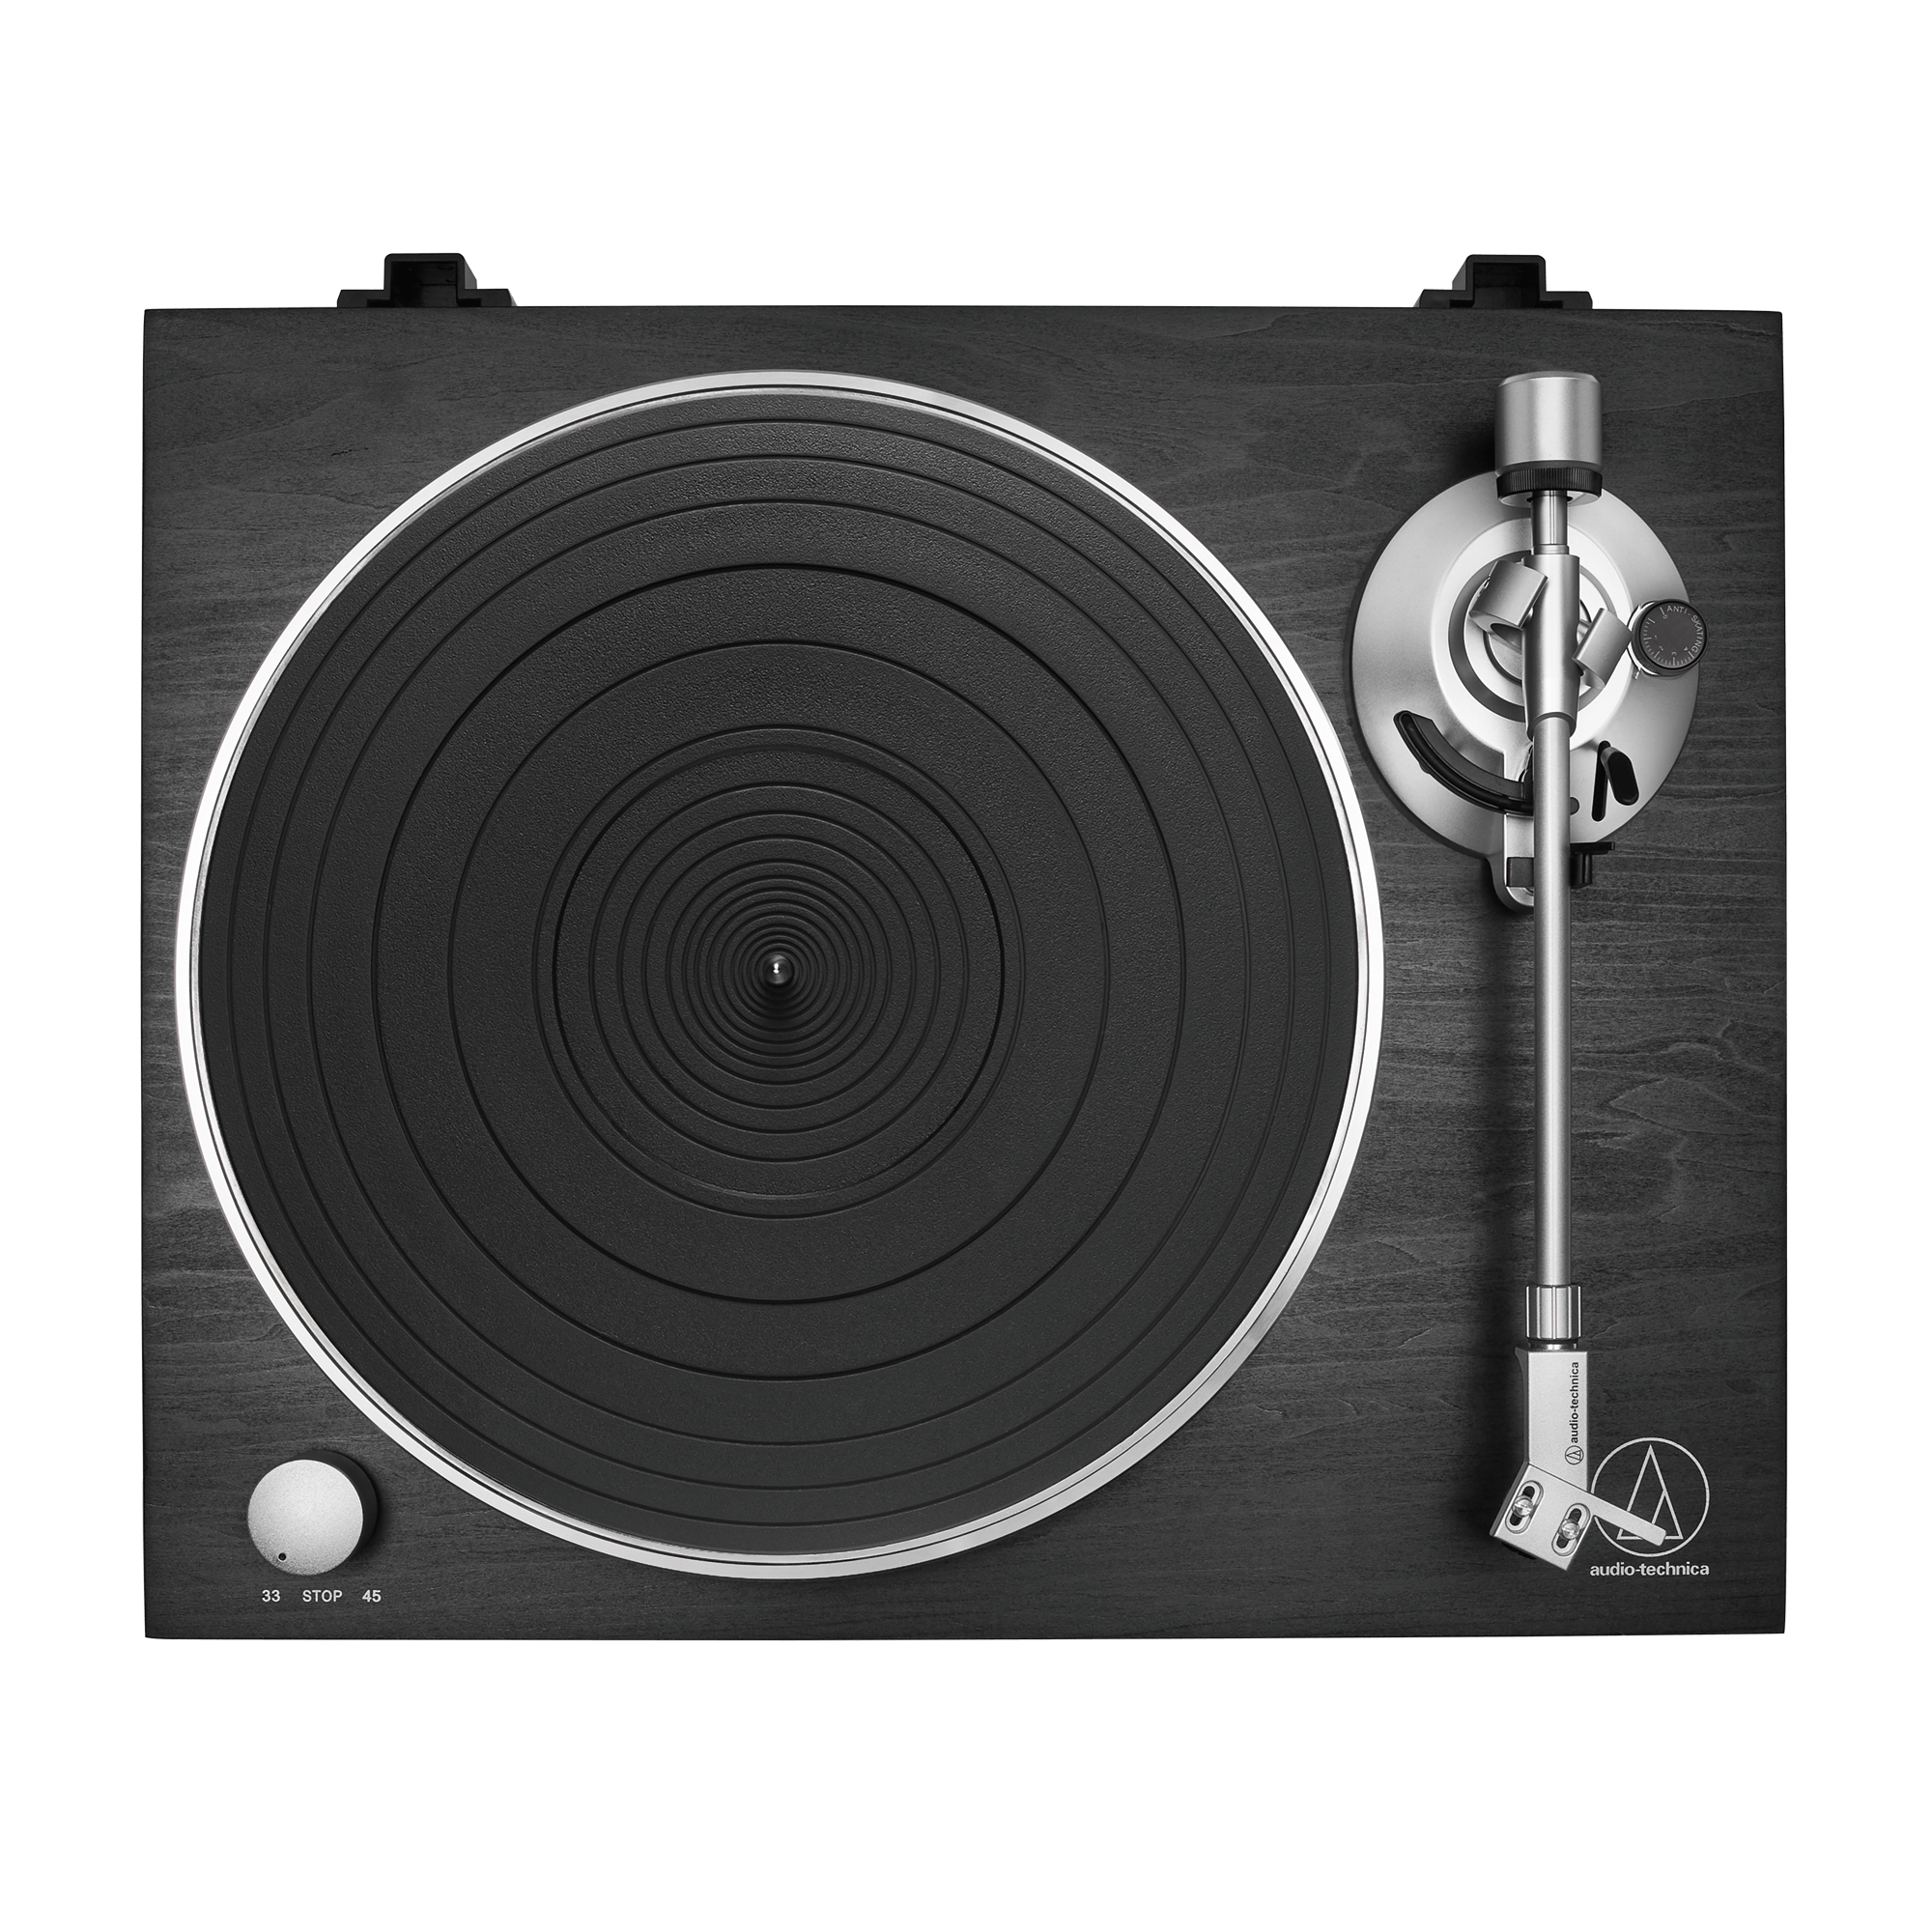 Platine vinyle Audio Technica, Bientôt la fête de la musique ! 🎶  Retrouvez le son authentique de vos vinyles grâce à cette platine Audio- Technica. Avec sa finition bois et son pré